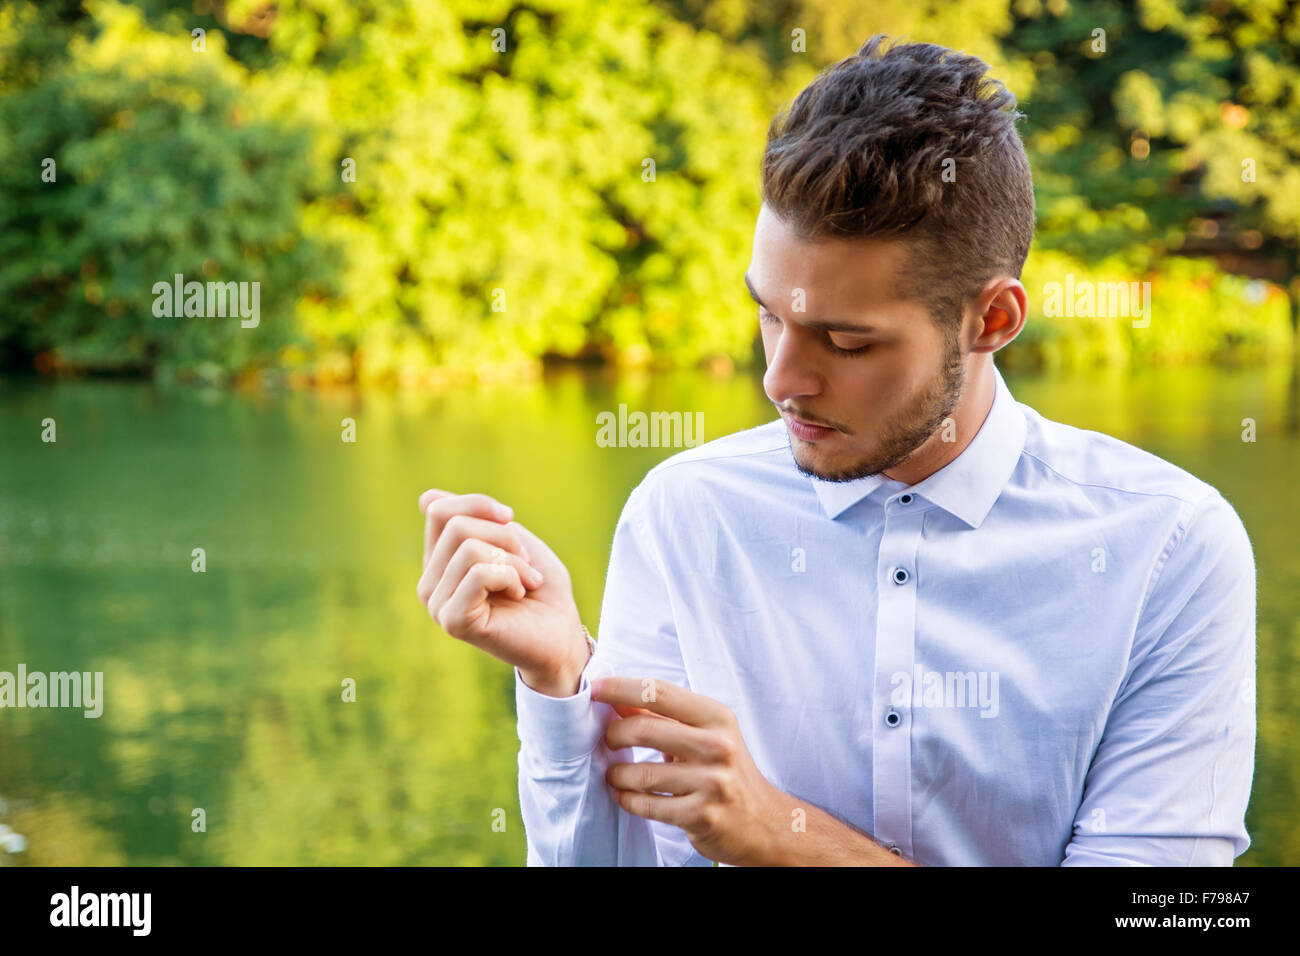 Porträt des kontemplativen leichte Braunhaarige junge Mann trägt weißes Hemd neben malerischen Fluss oder See, Blick auf Hemd cu Stockfoto